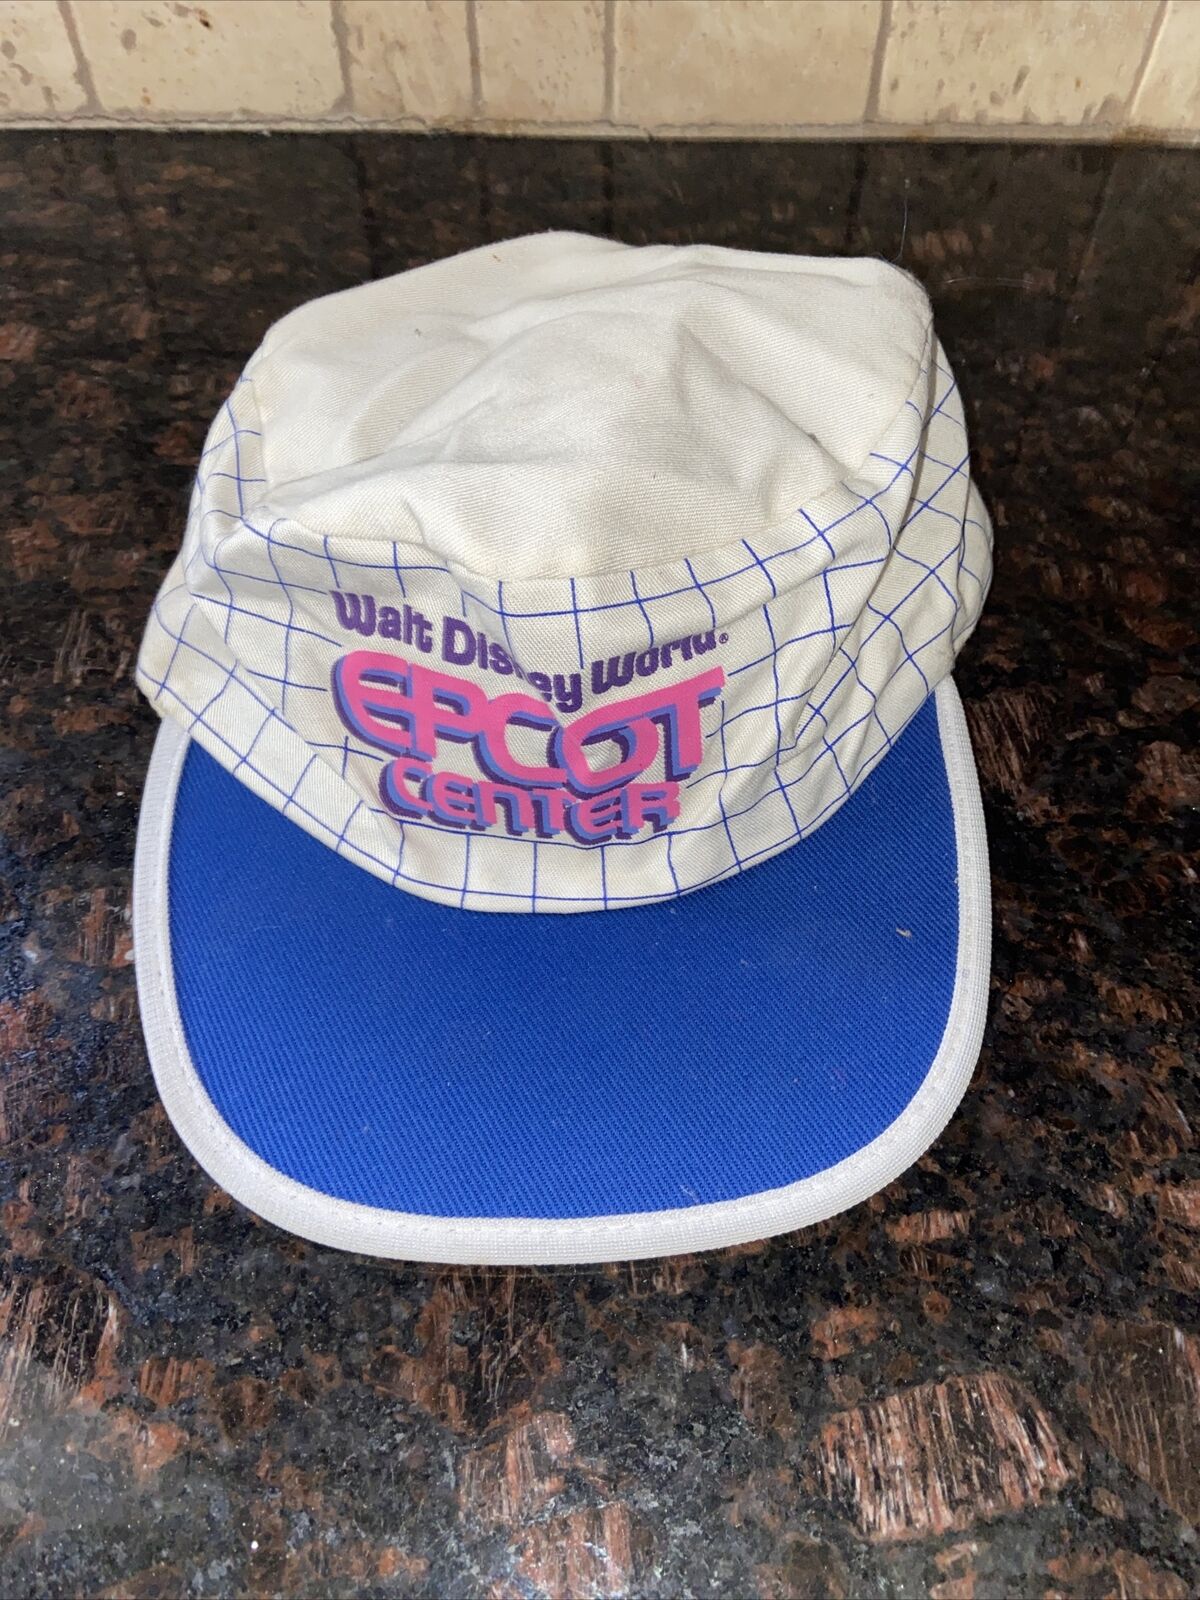 Vintage Walt Disney World Epcot Center Painter Hat Cap 1982